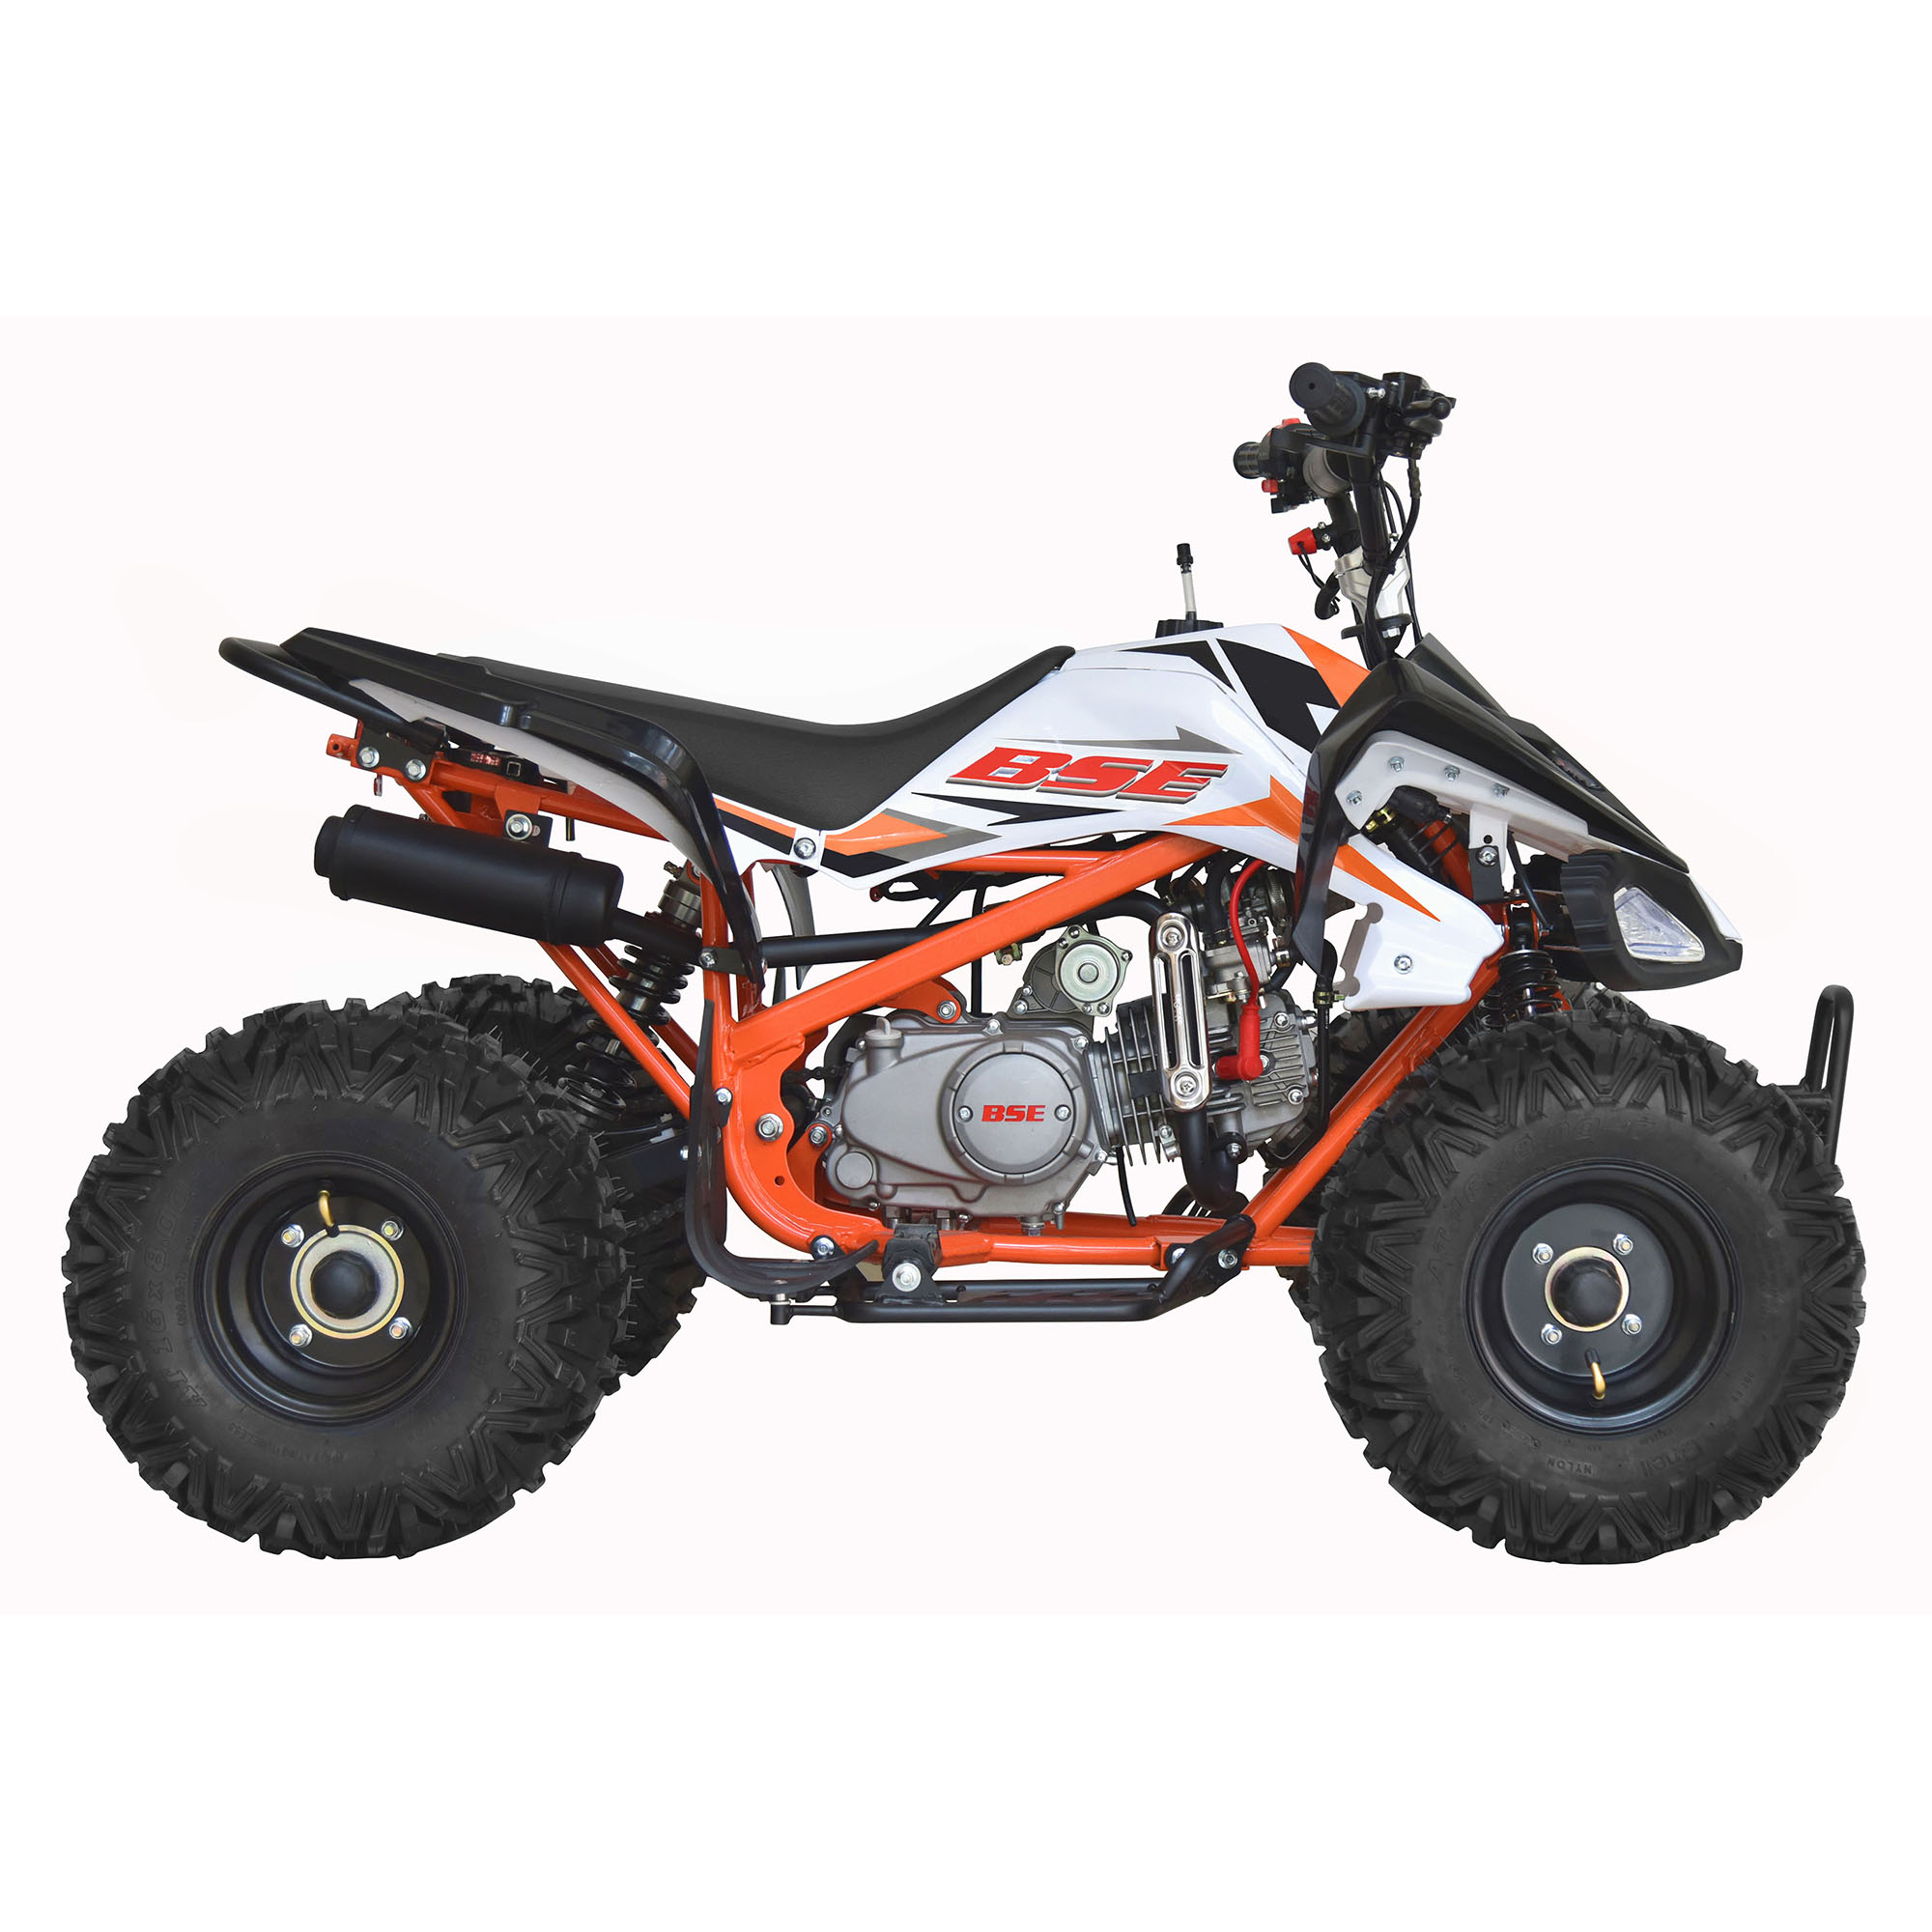 BOSUER ATV SA110 110cc